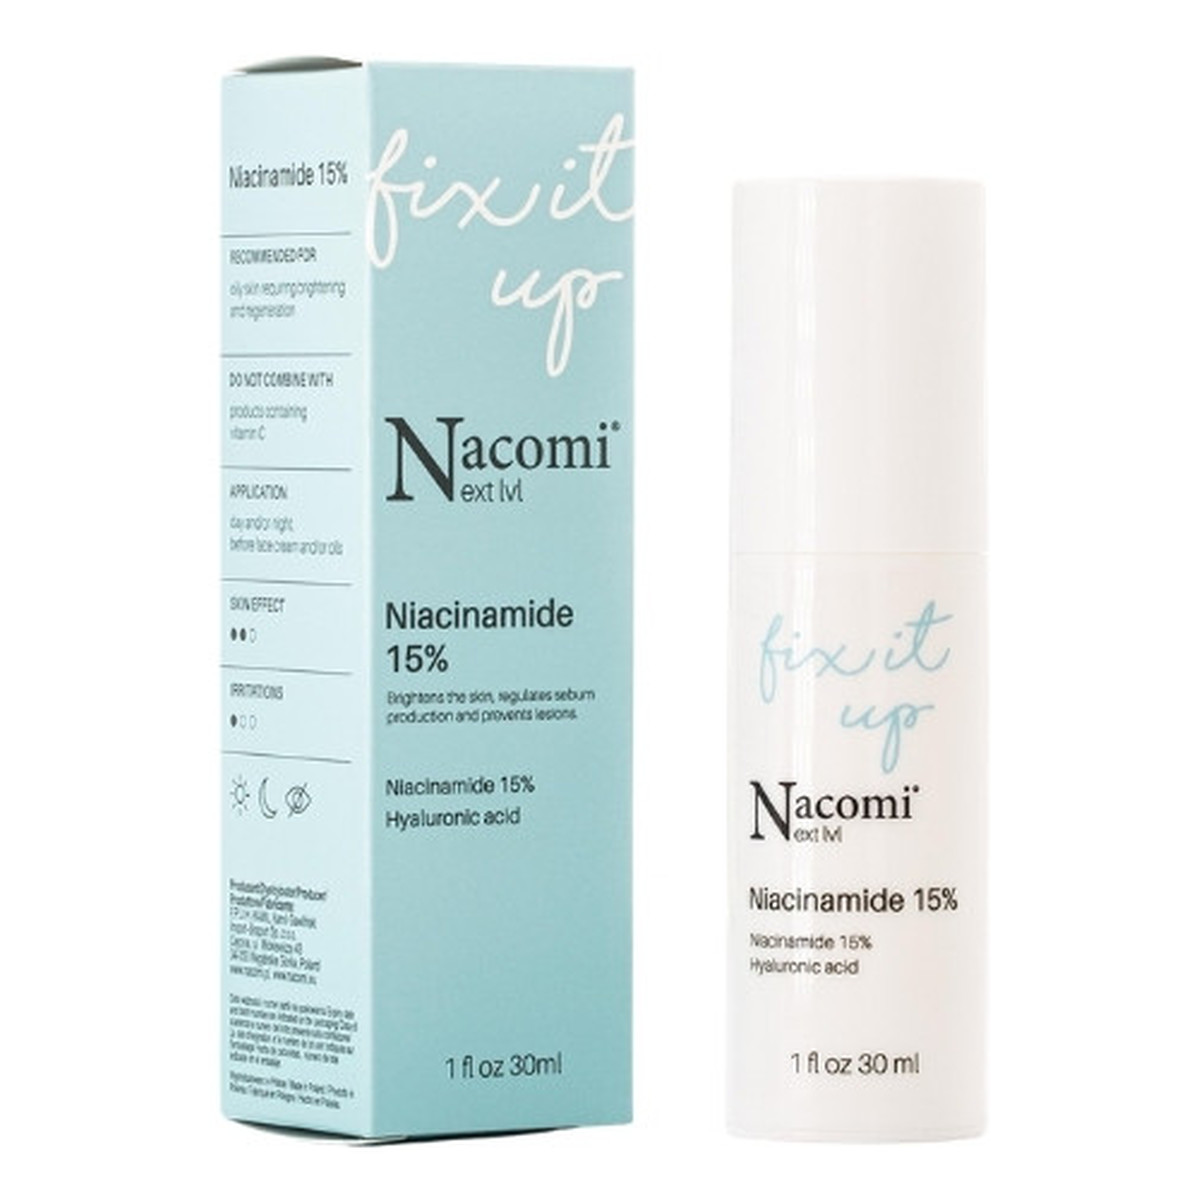 Nacomi Next Level Niacynamid 15% serum do twarzy 30ml